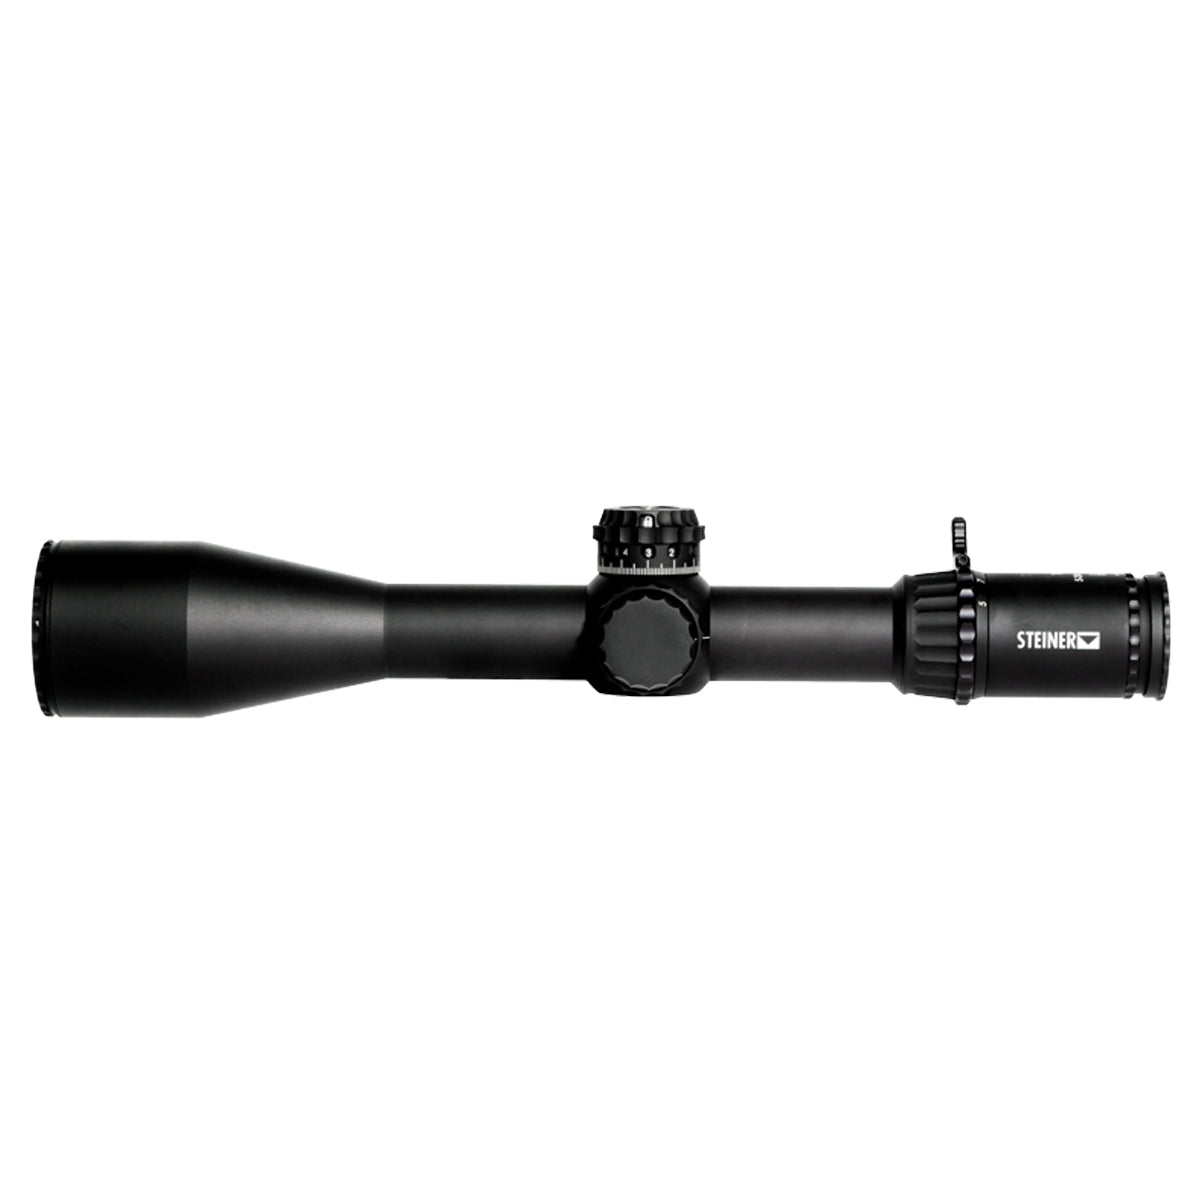 Steiner Optics T6Xi 5-30x56mm SCR2 Riflescope